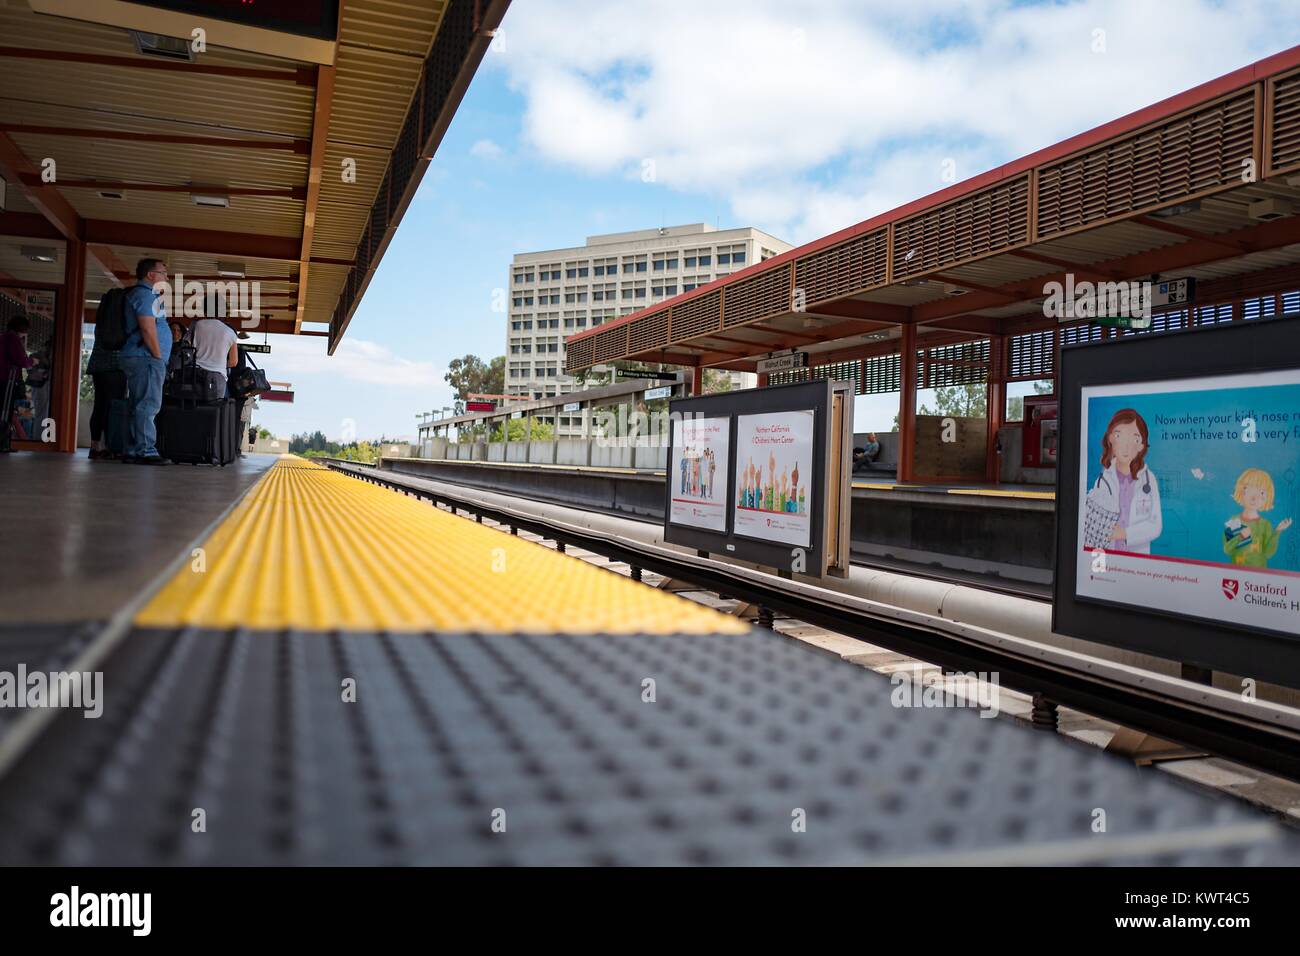 A basso angolo di visione dei passeggeri in attesa di un treno, visto dal bordo della piattaforma, all'Walnut Creek, California stazione della Bay Area Rapid Transit (BART) Sistema ferroviario leggero, 13 settembre 2017. Foto Stock